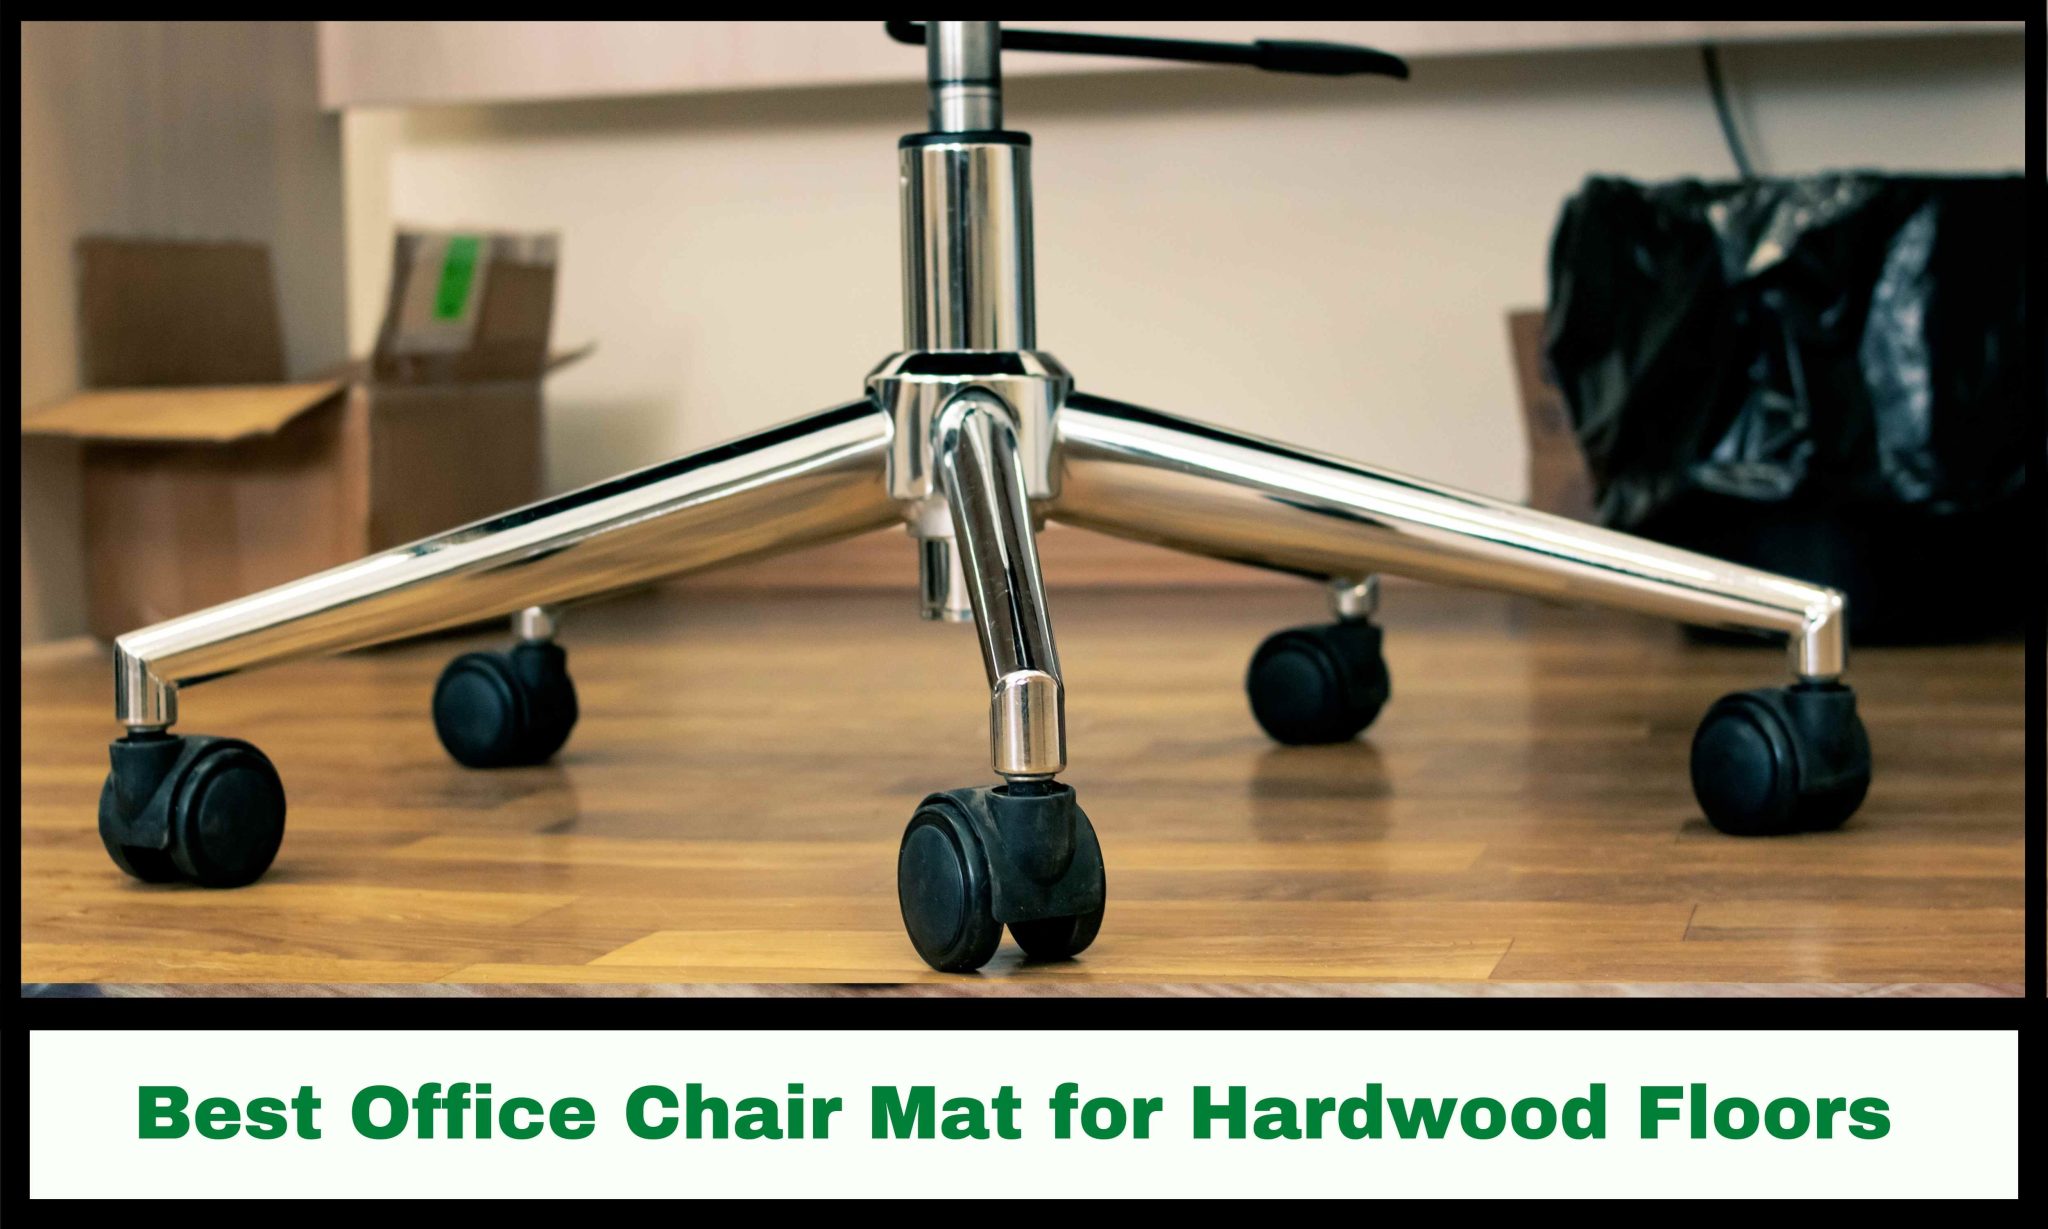 Best Chair Mats for Hardwood Floors - Best Chair Advisor